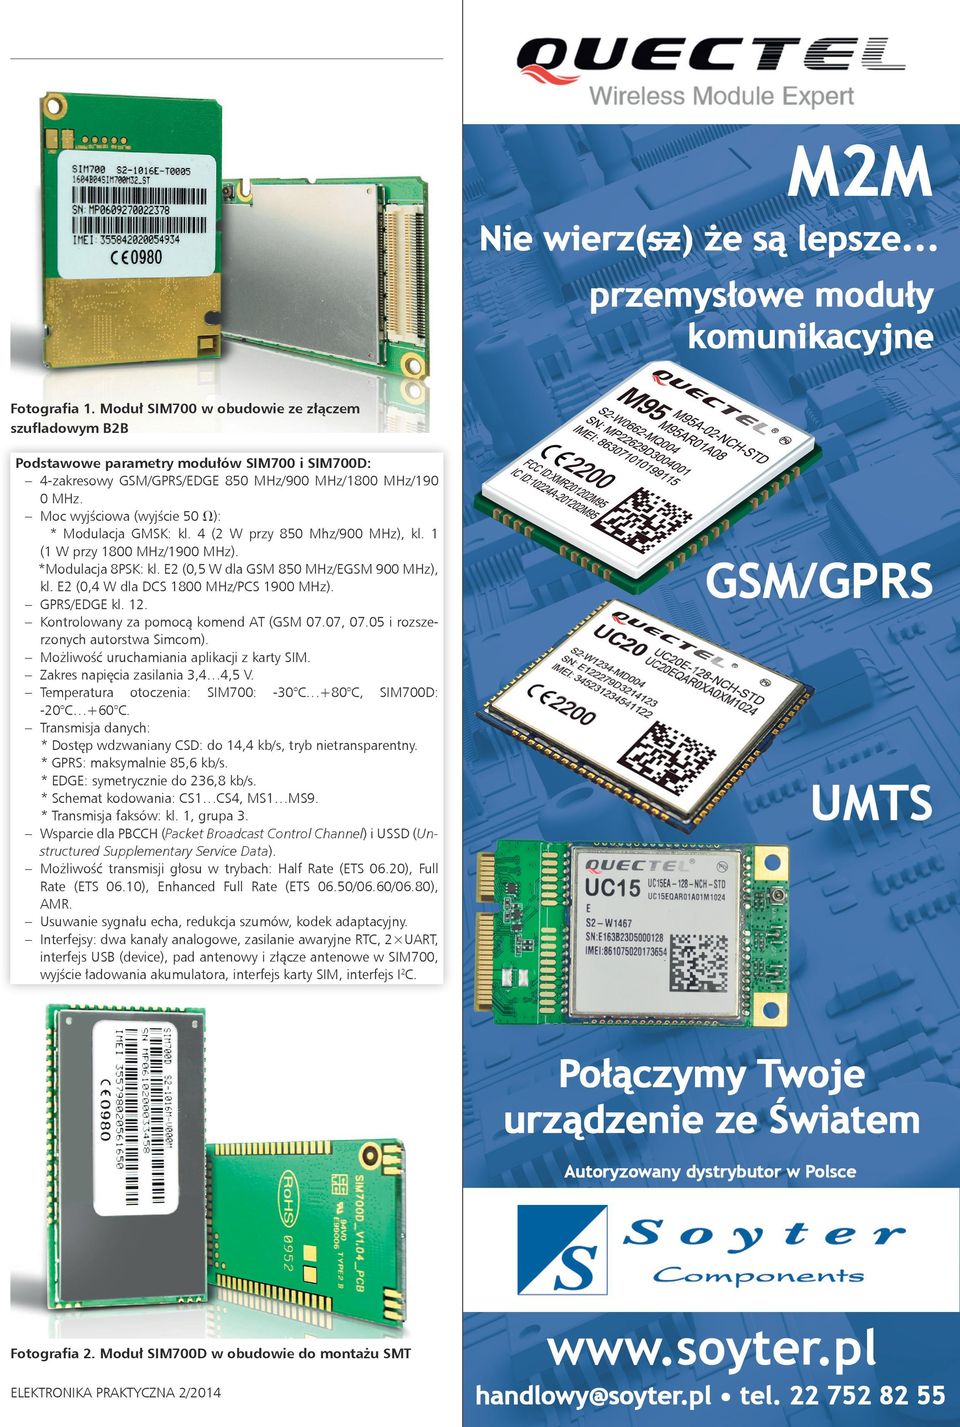 Moc wyjściowa (wyjście 50 V): * Modulacja GMSK: kl. 4 (2 W przy 850 Mhz/900 MHz), kl. 1 (1 W przy 1800 MHz/1900 MHz). *Modulacja 8PSK: kl. E2 (0,5 W dla GSM 850 MHz/EGSM 900 MHz), kl.